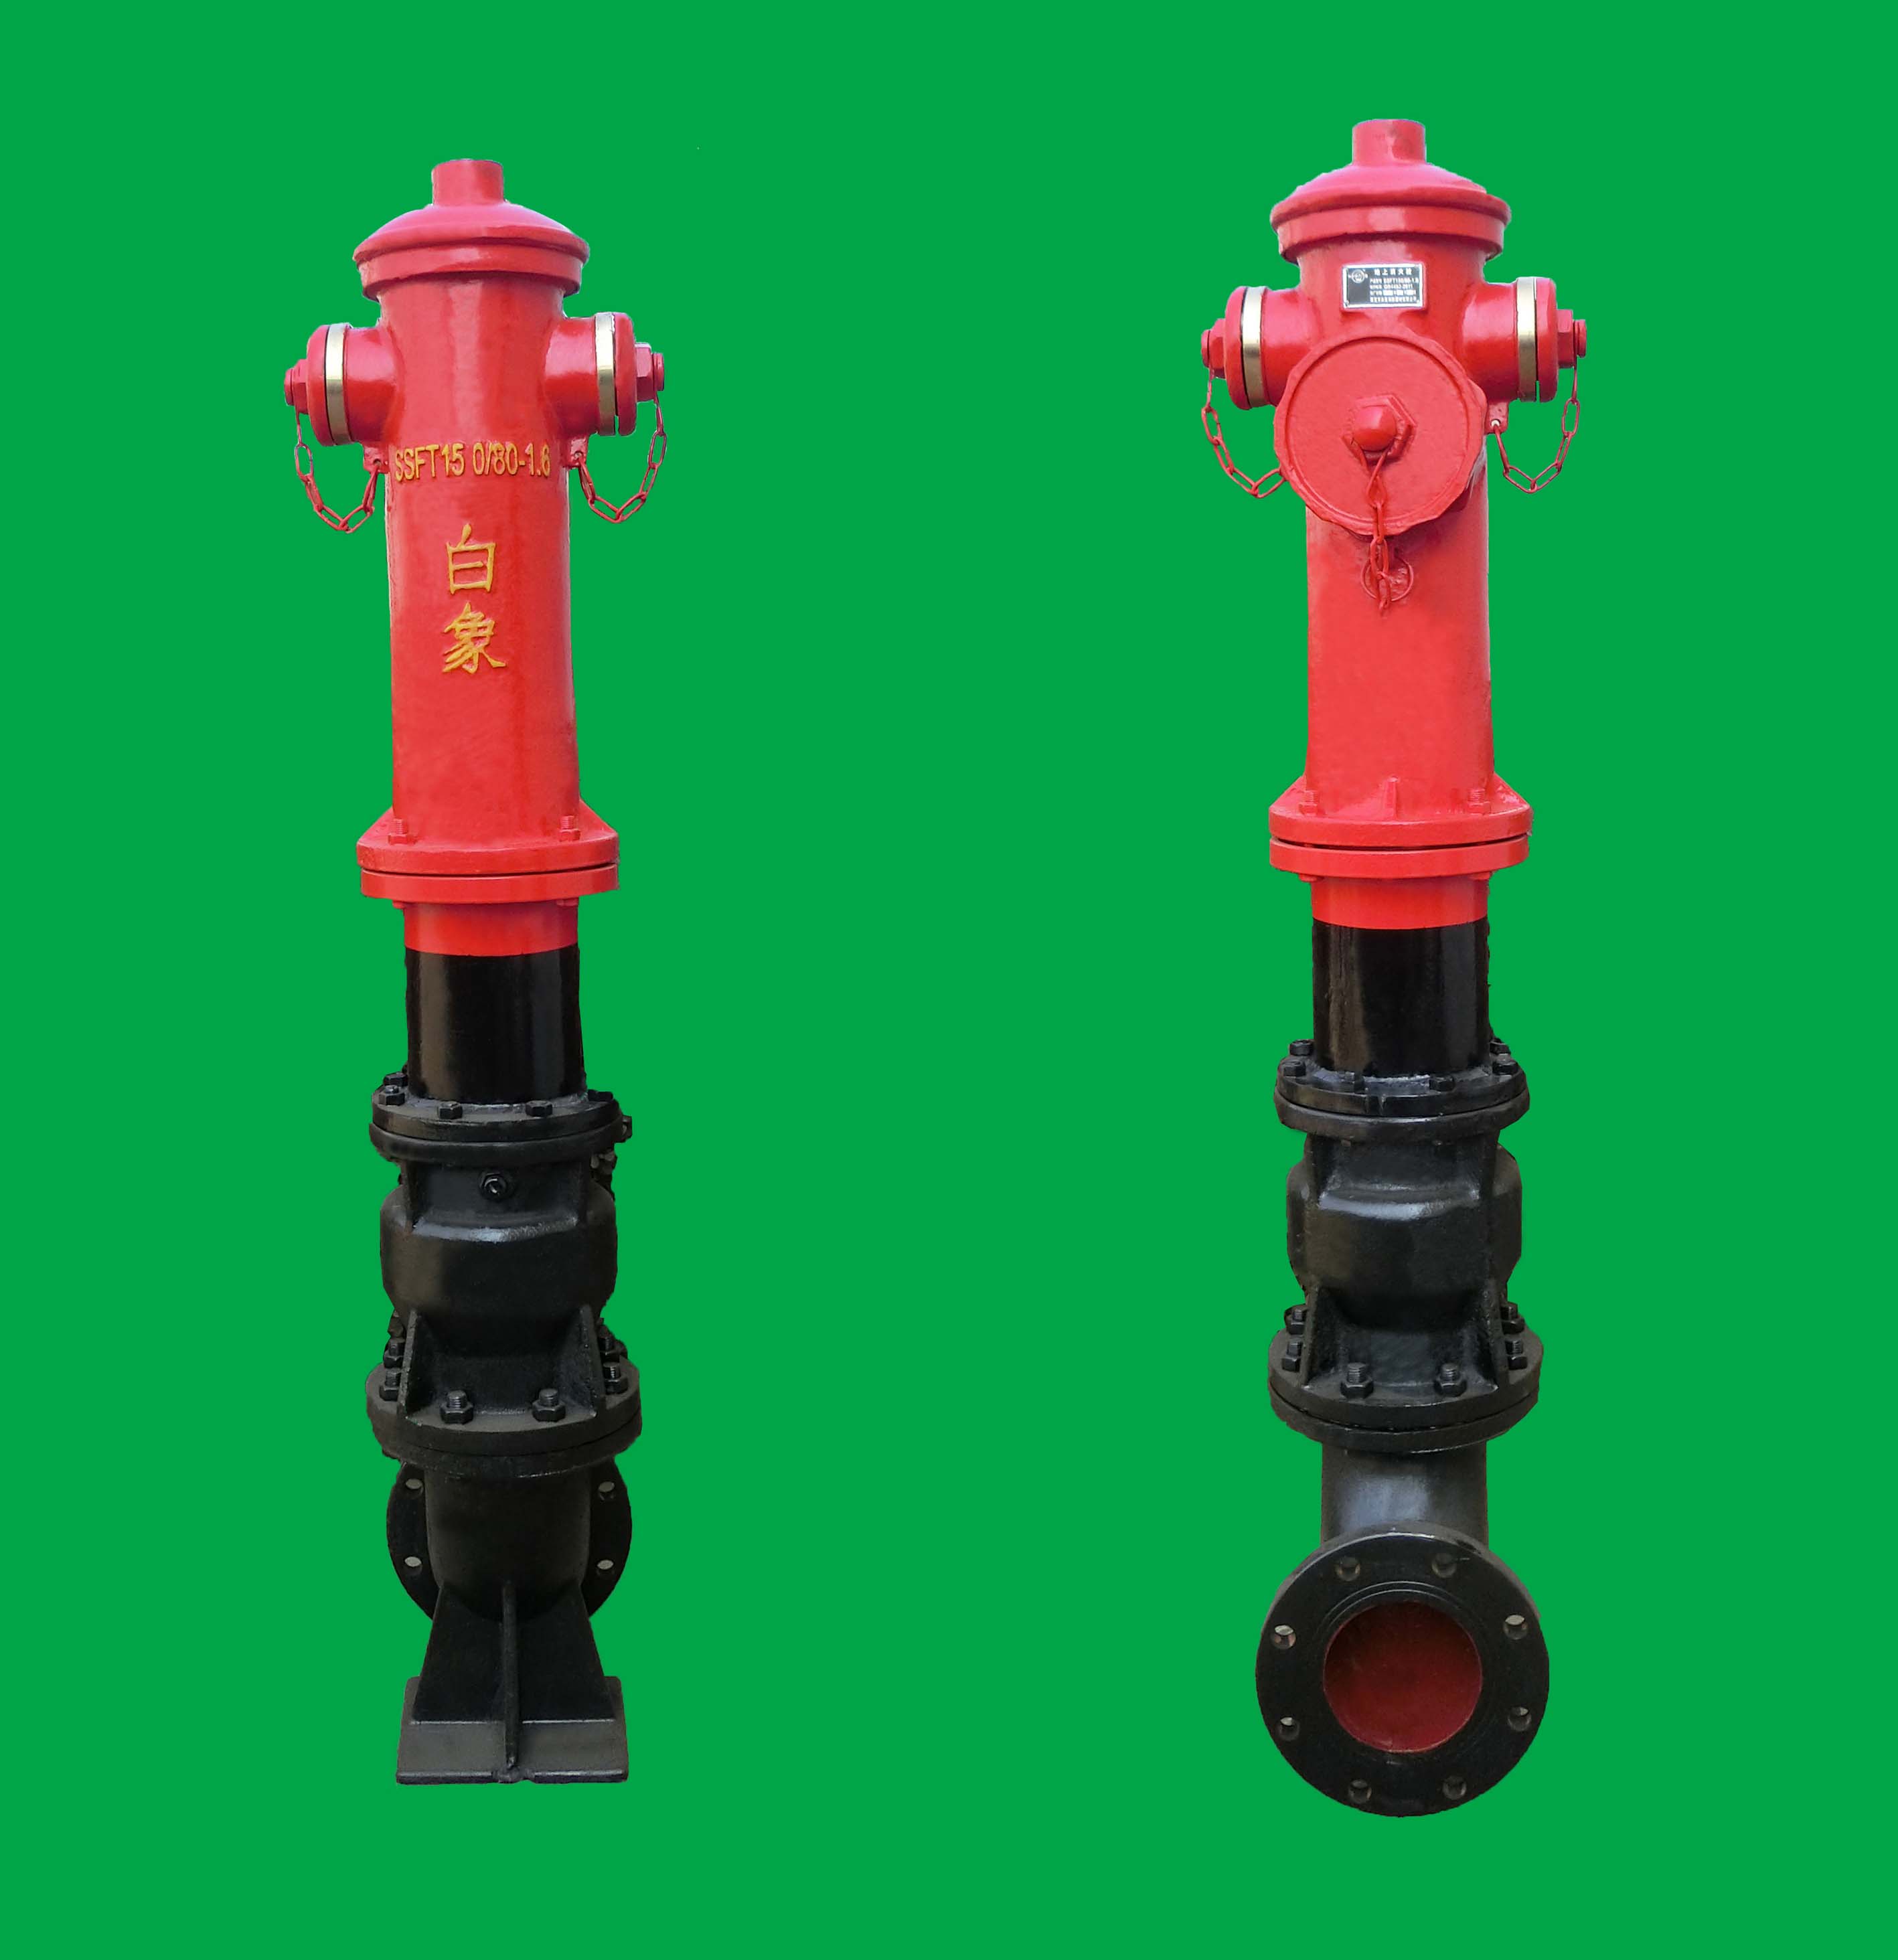 防撞調壓型室外消火栓SSFT150/80型